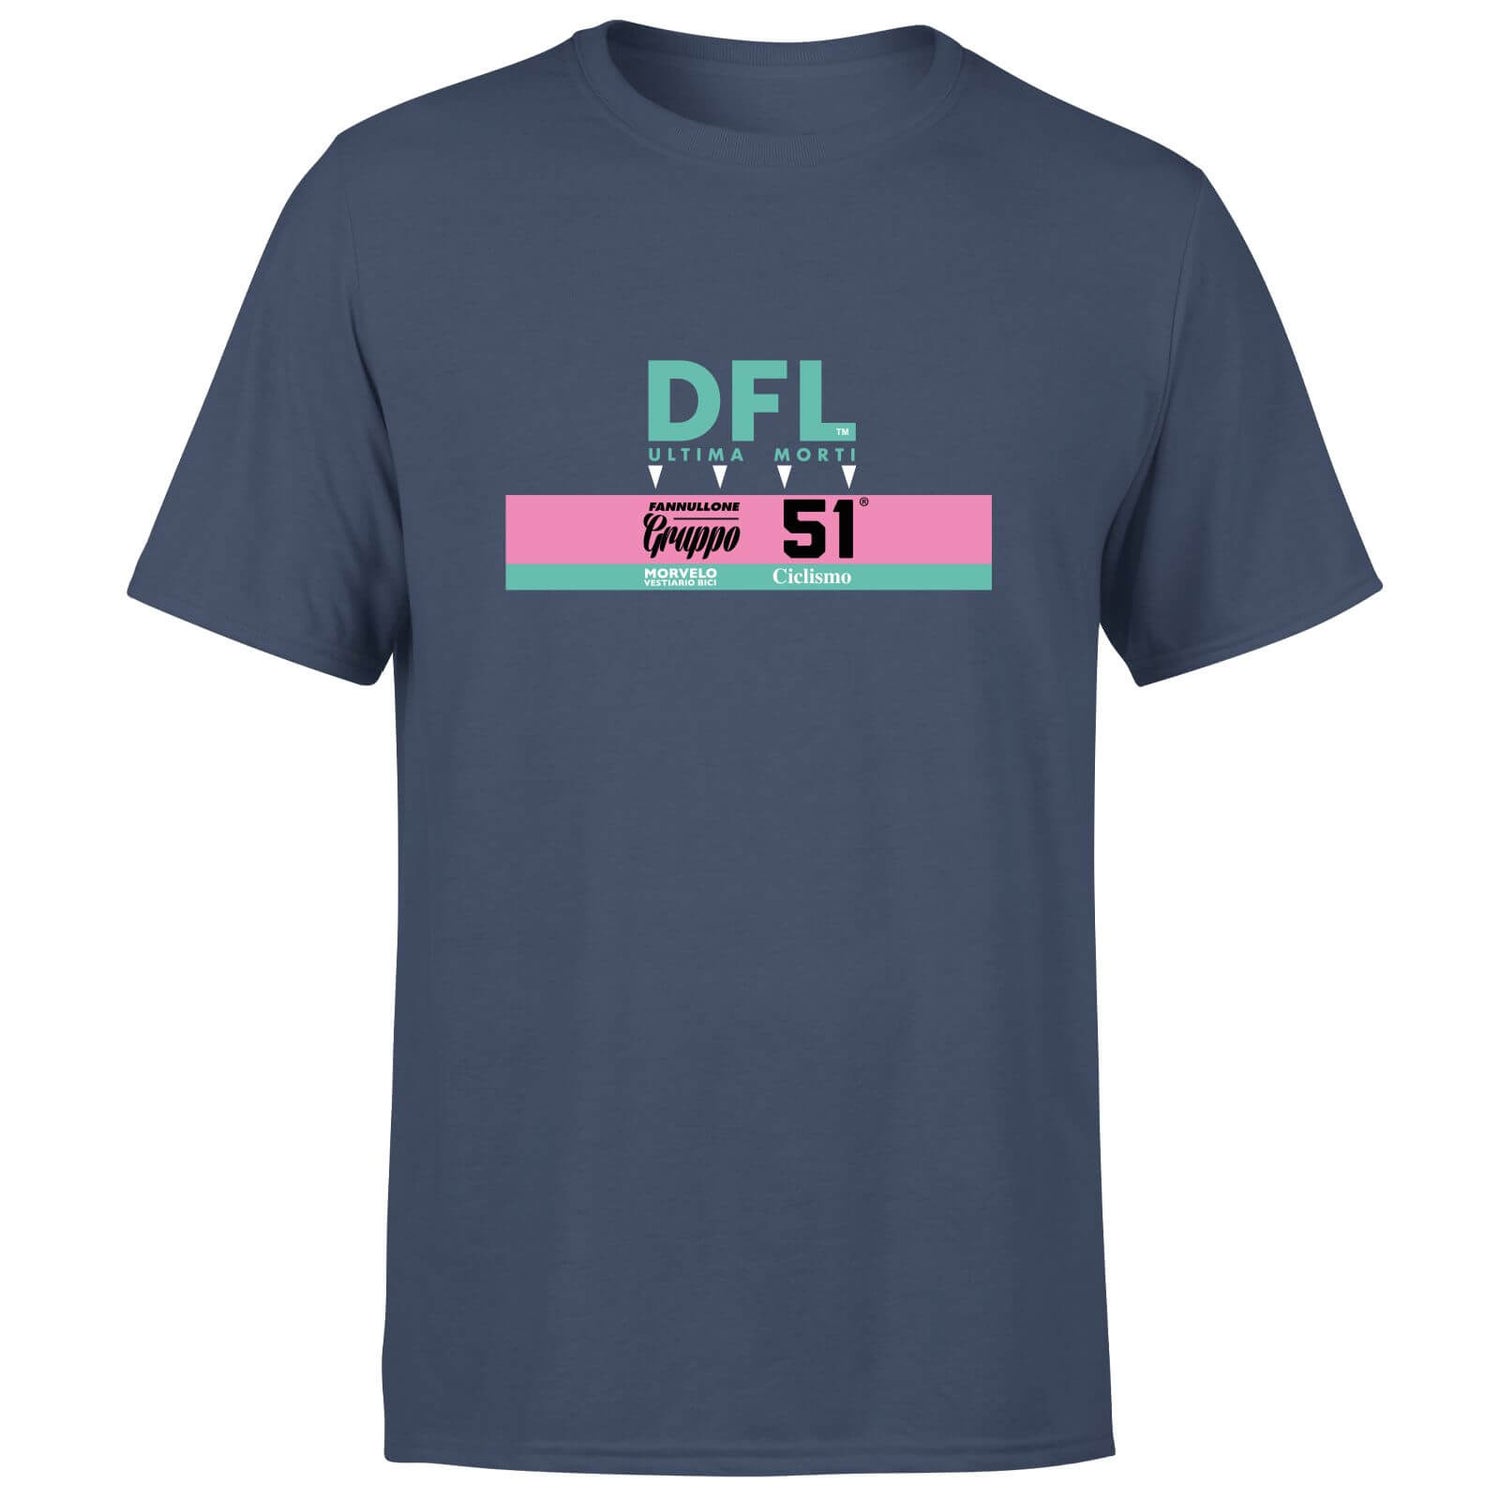 DFL Men's T-Shirt - Navy